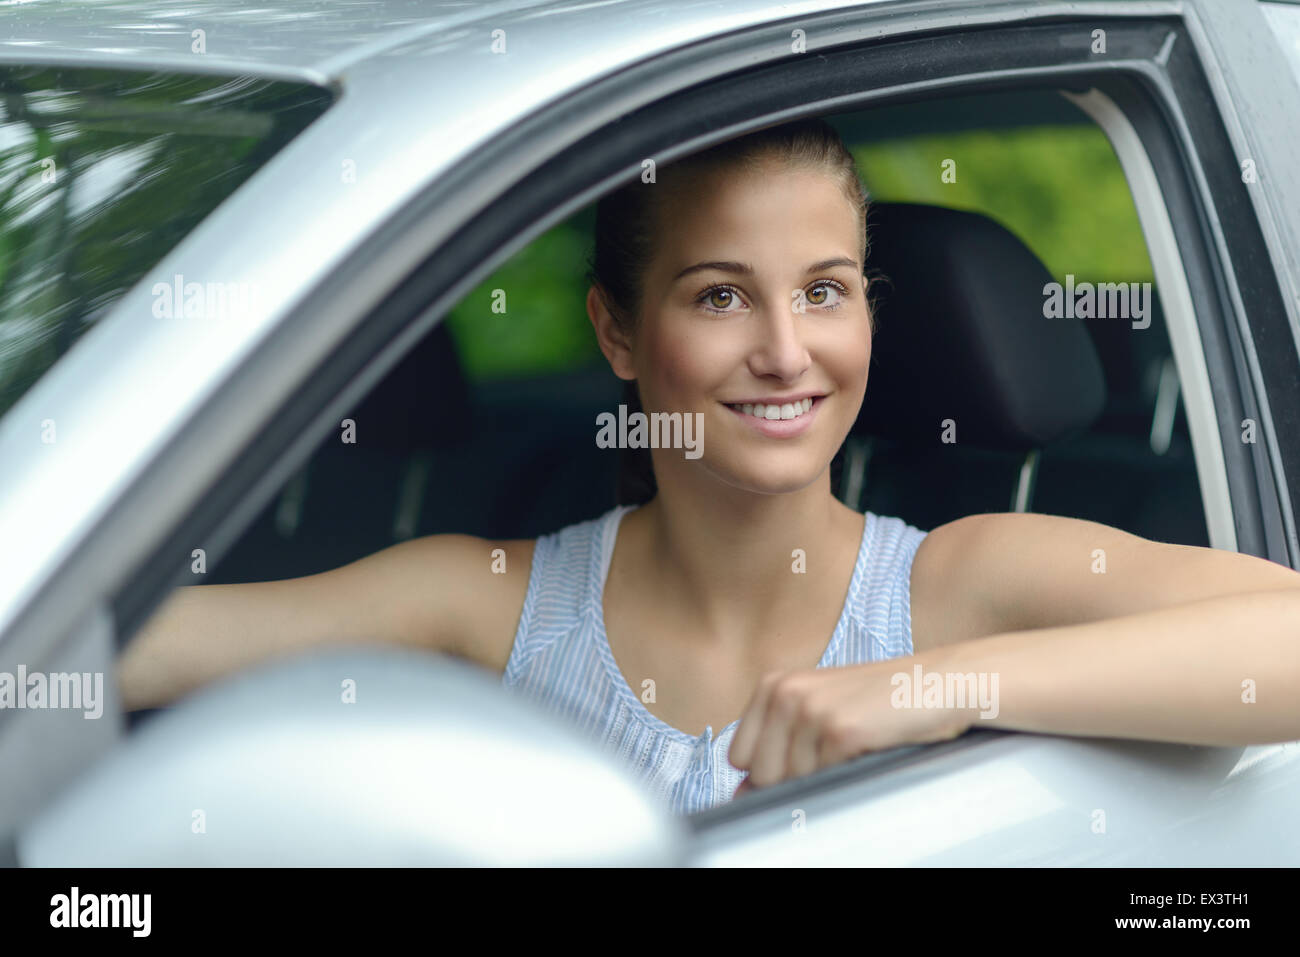 Attraktive junge Frau, die ein Auto aus ihrer offenen Seitenfenster in die Kamera schaut, mit einem warmen freundlichen Lächeln Lächeln Stockfoto